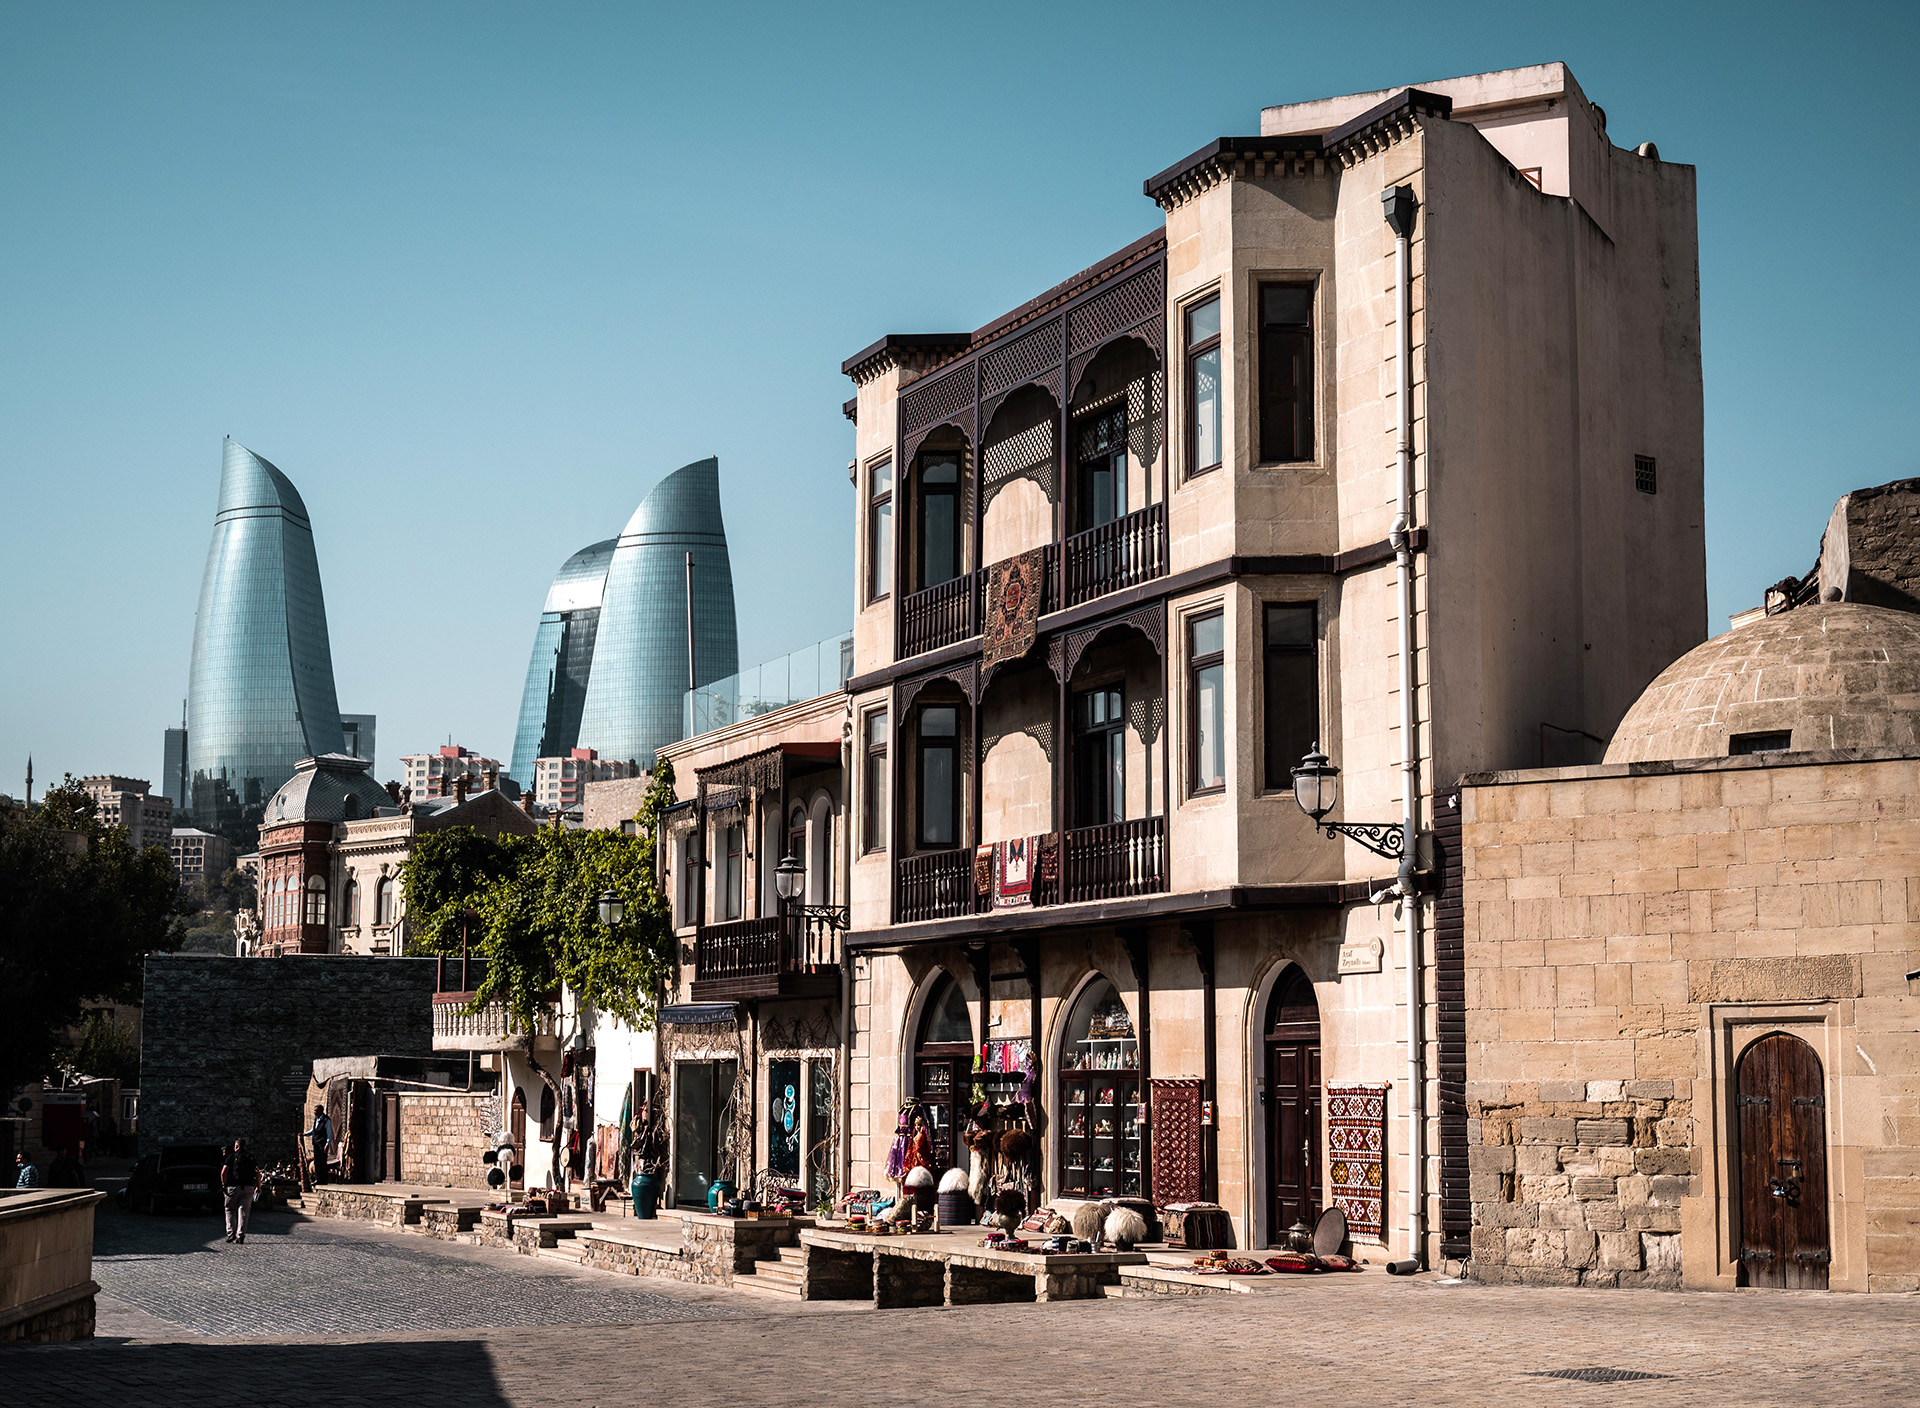 Baku - nyt og gammelt mødes